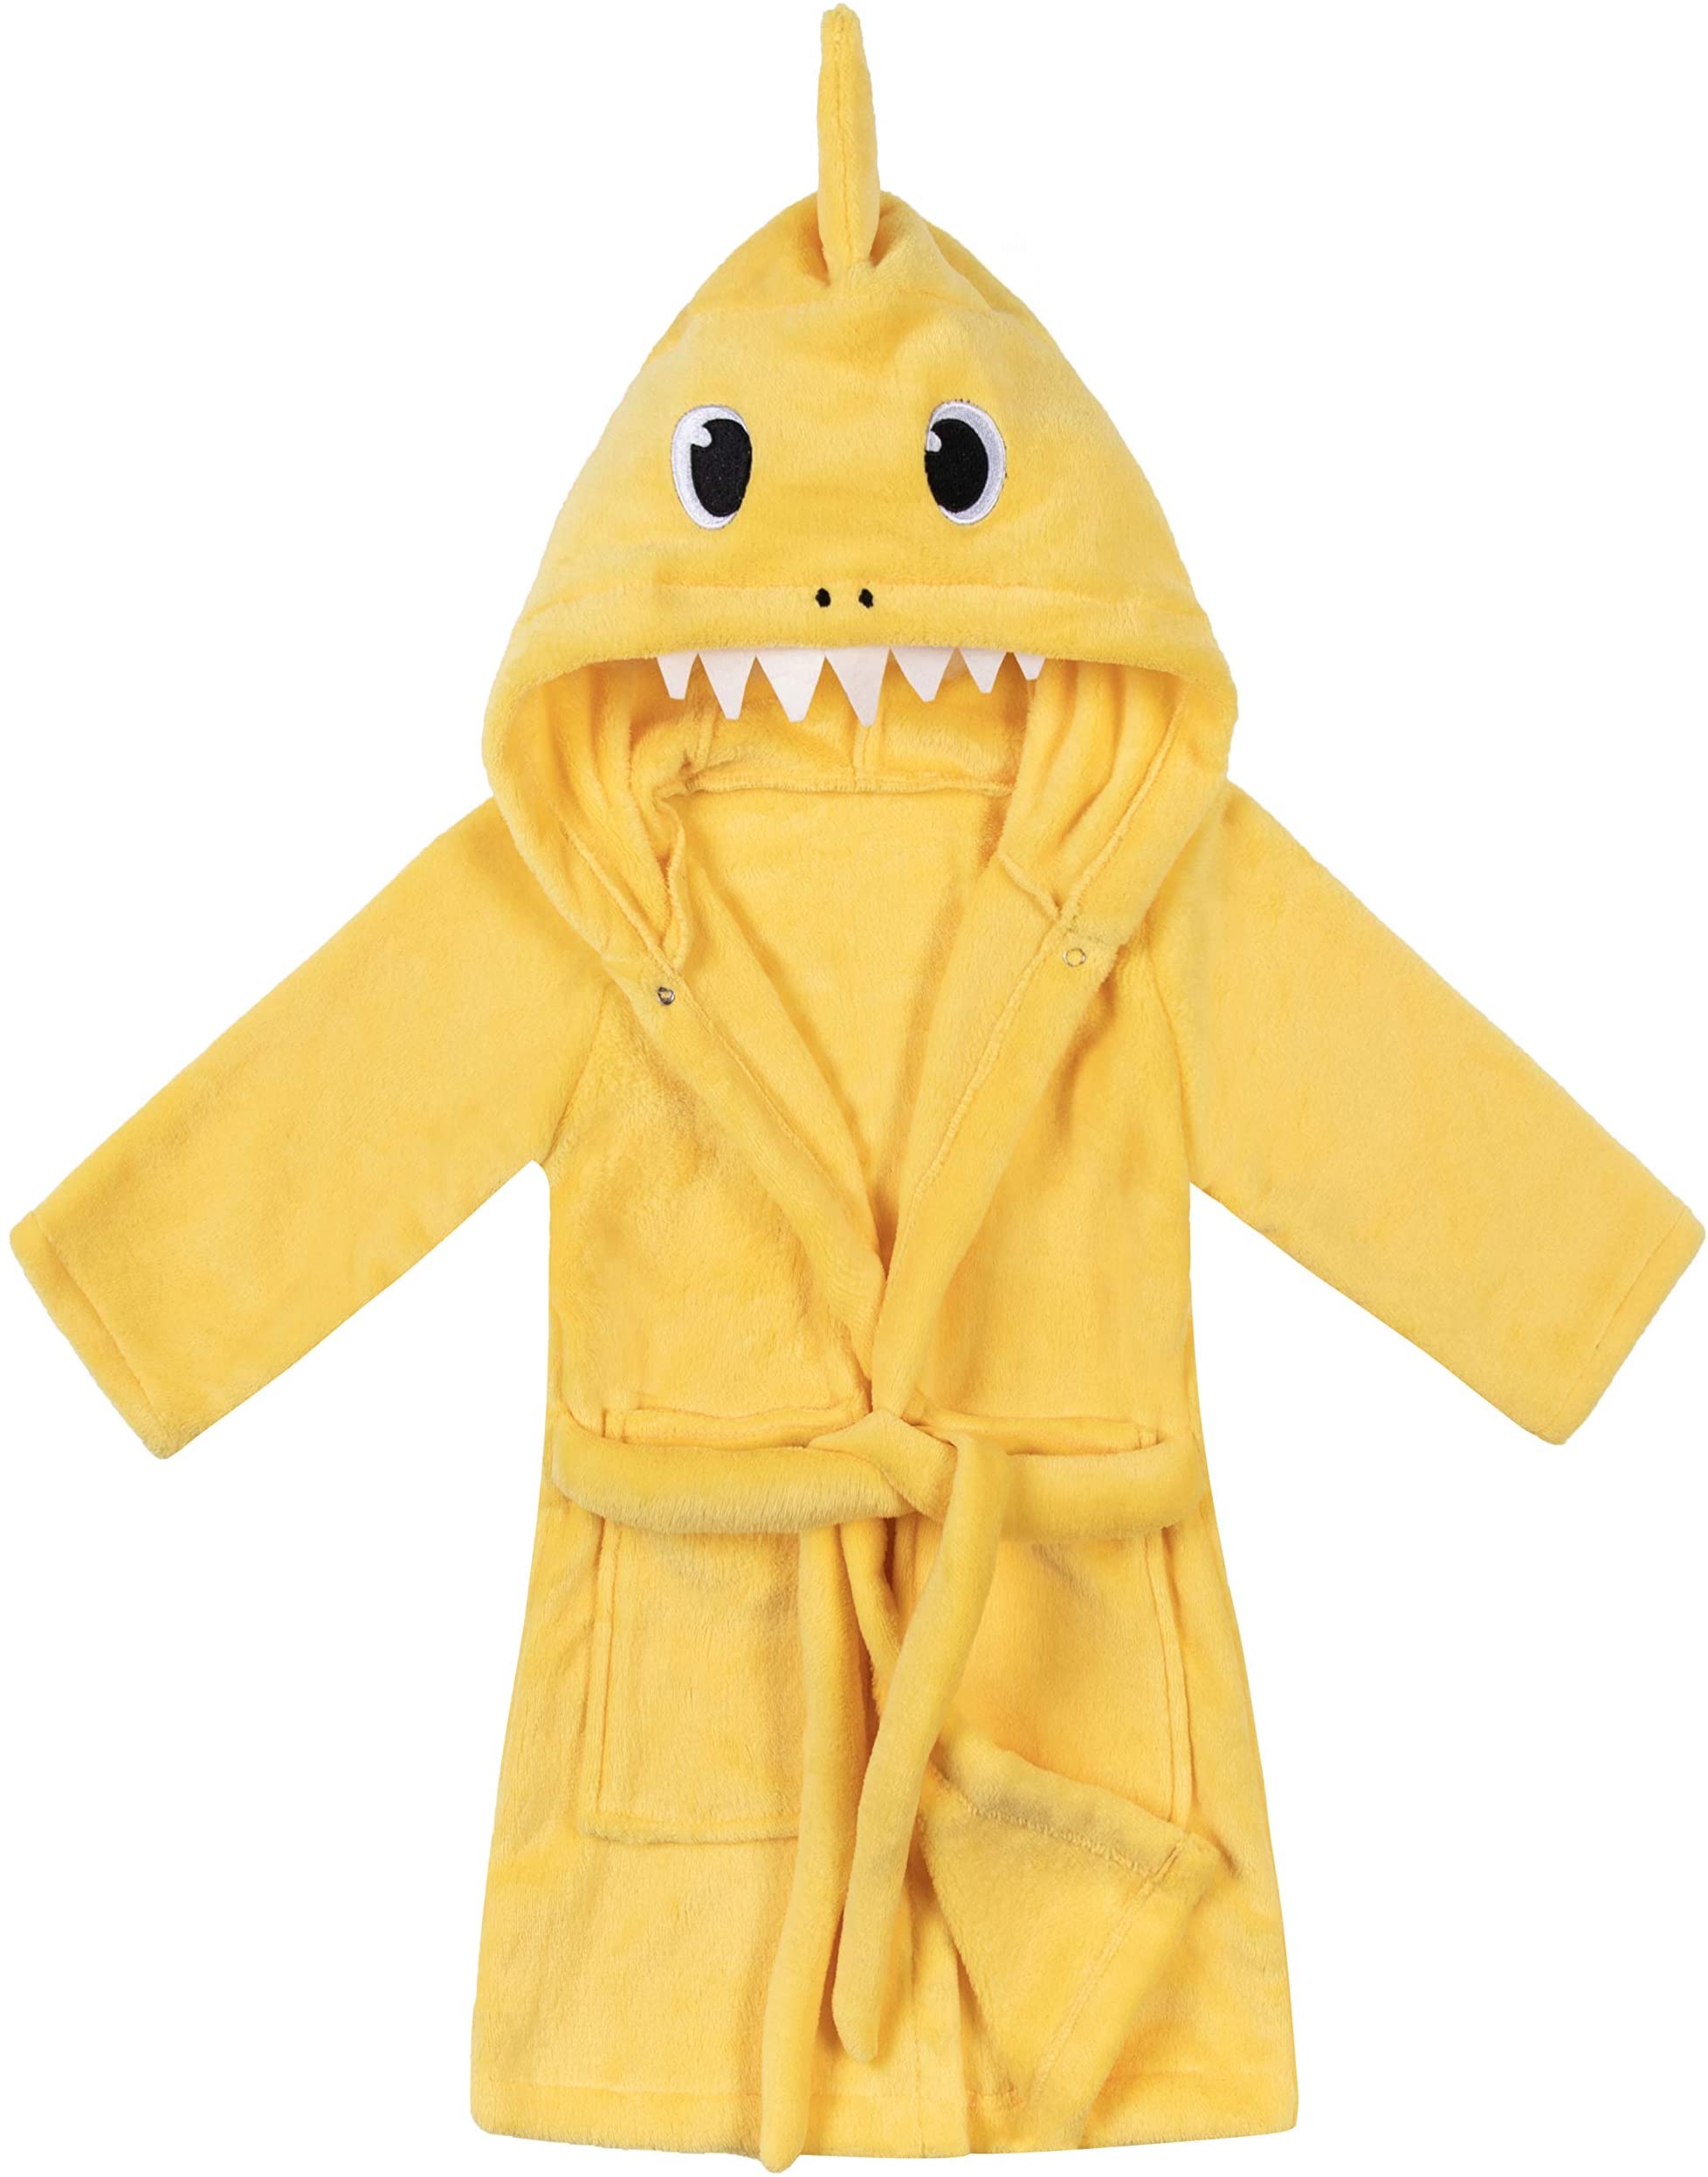 Kids Boys Girls Shark Soft Hooded Bathrobe Toddler Robe with Animal Hood